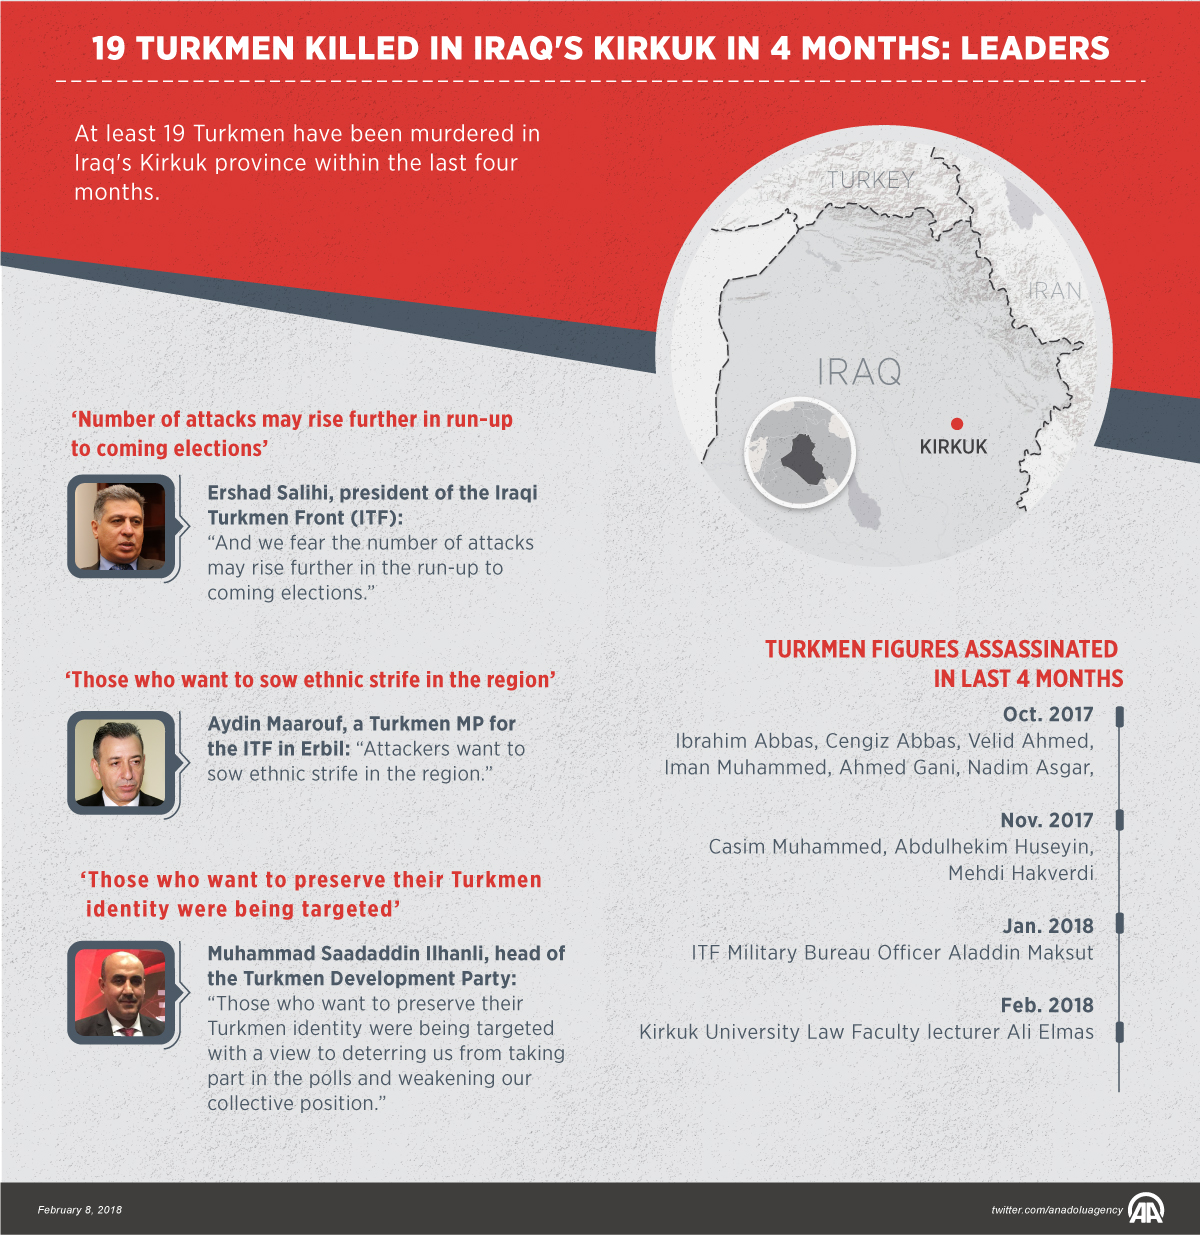 19 Turkmen killed in Iraq's Kirkuk in 4 months: Leaders